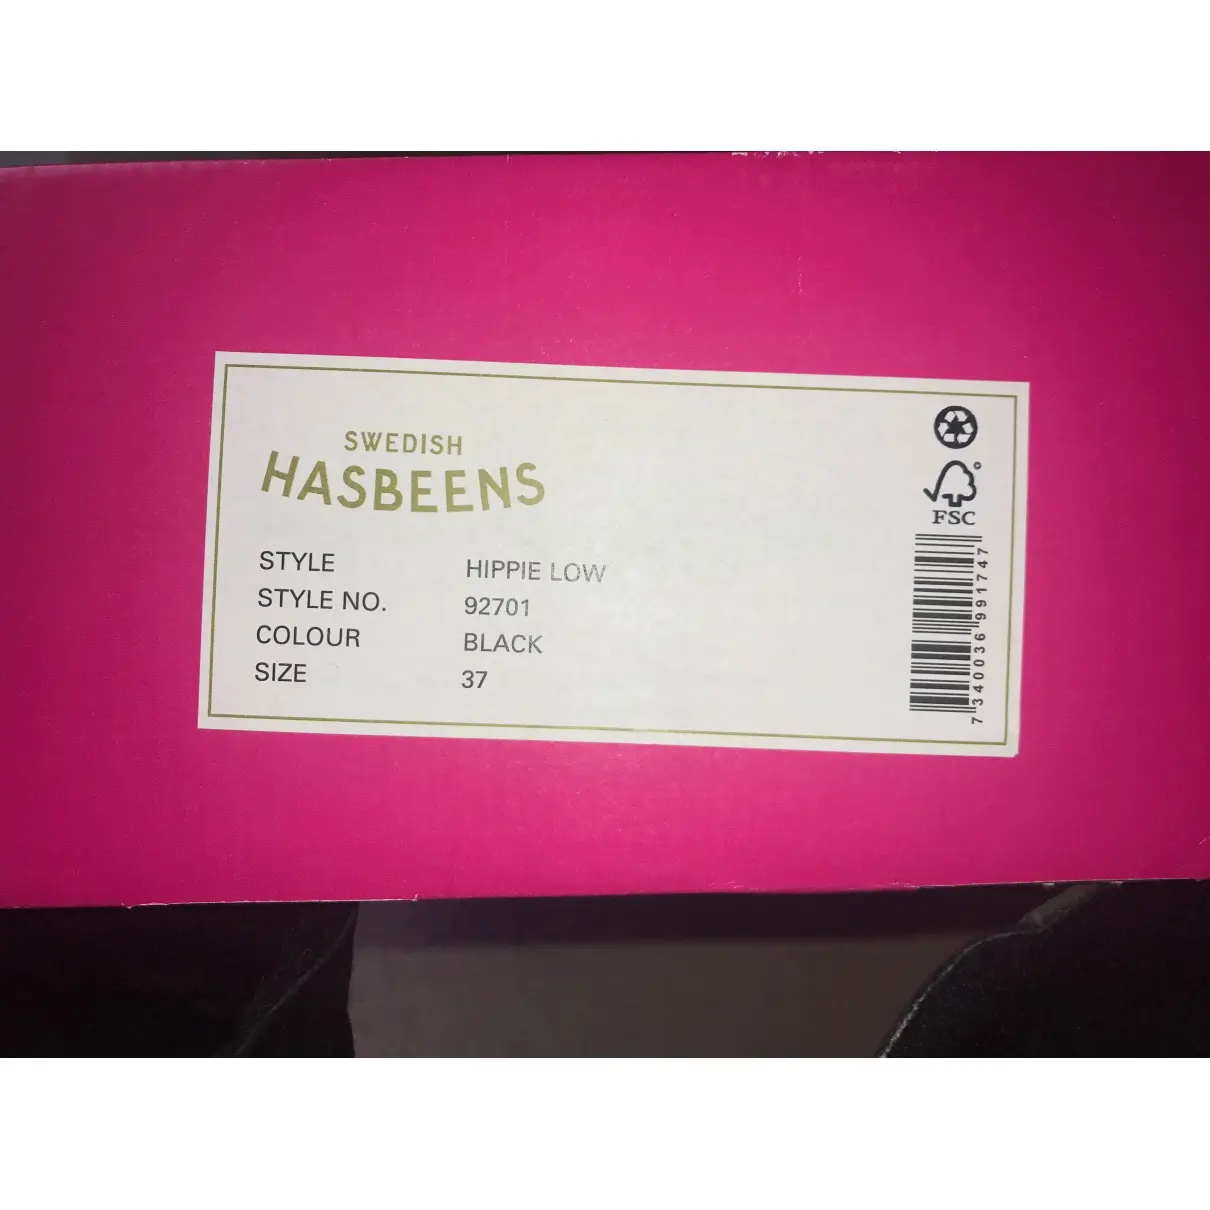 Buy Swedish Hasbeens Boots online